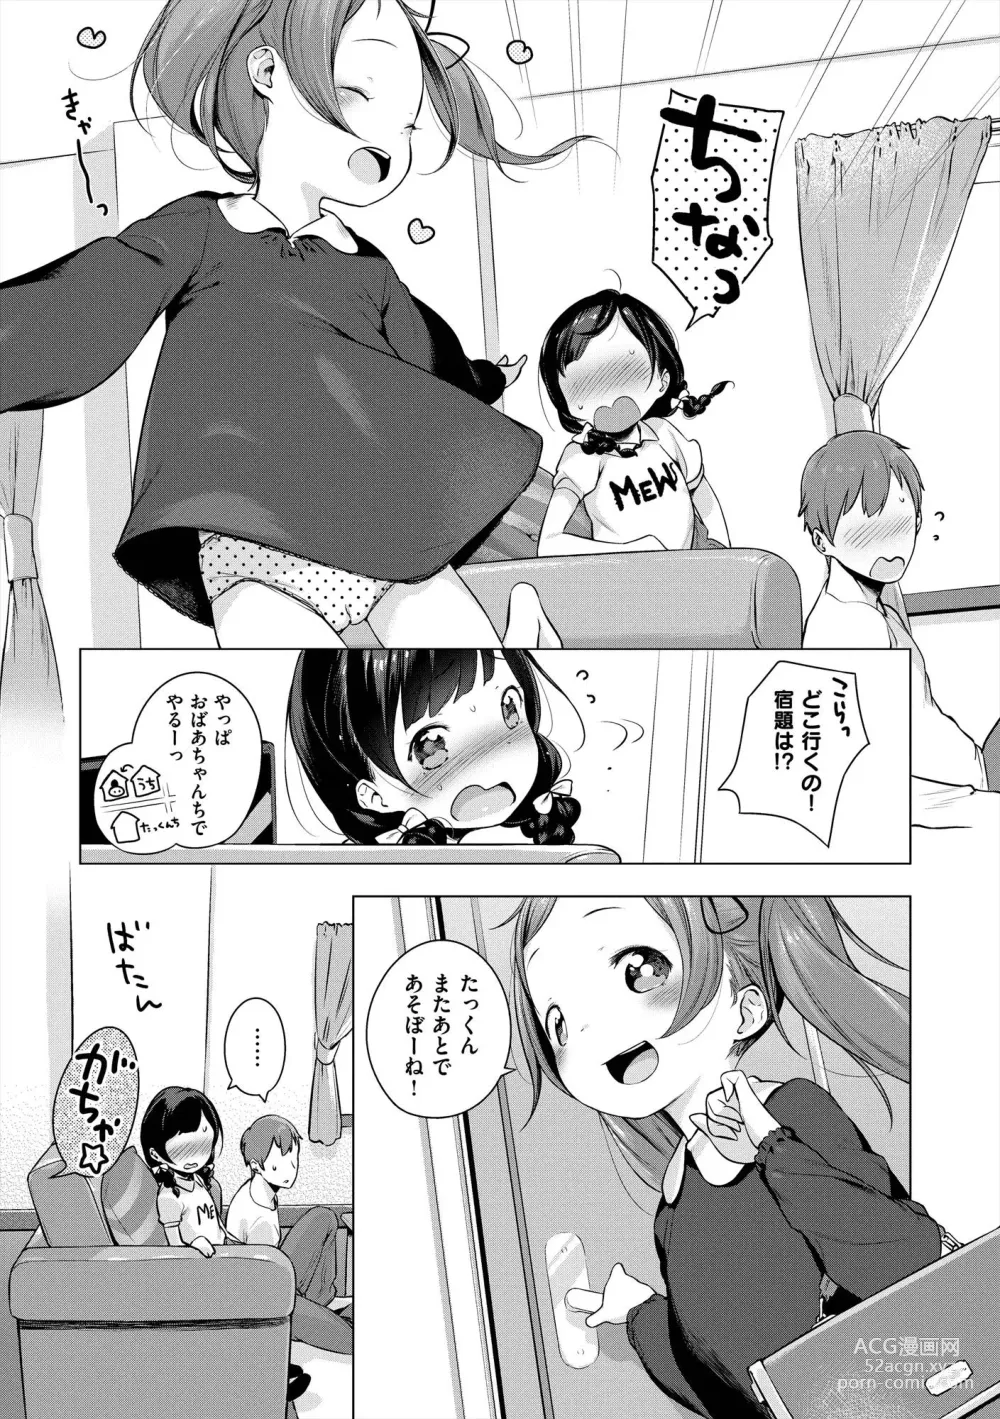 Page 27 of manga Onnanoko Party.